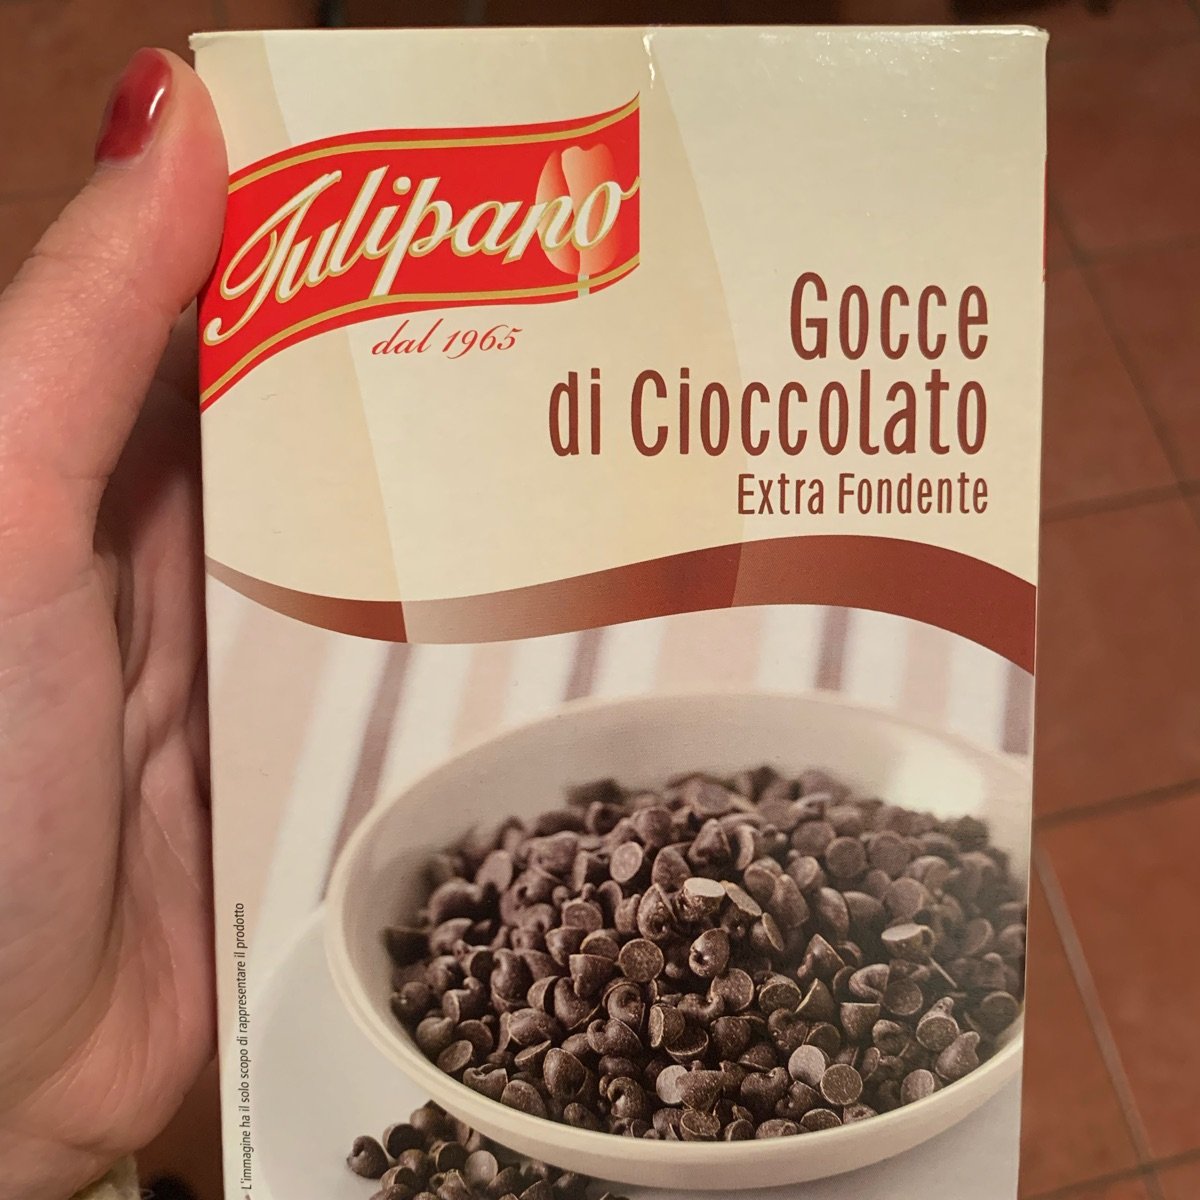 Tulipano Gocce Di Cioccolato Extra Fondente Review